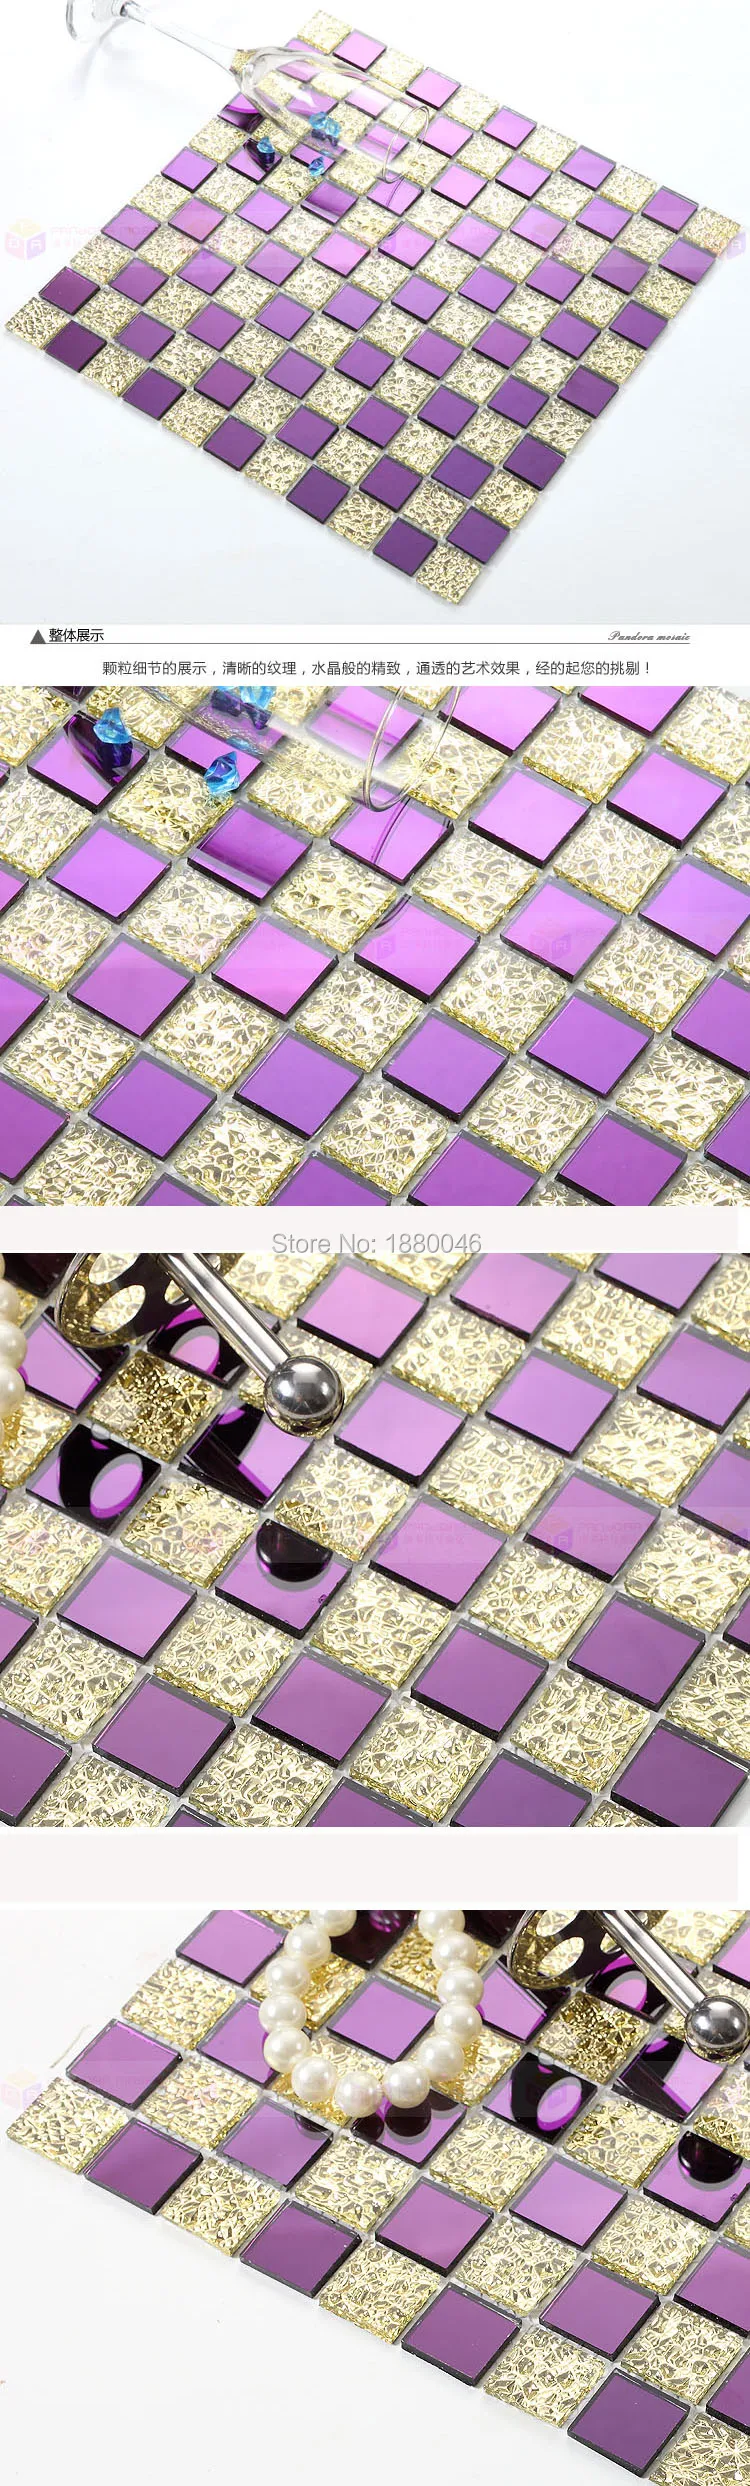 1 коробка 11 штук Высокое качество Фиолетовый Кристалл Стекло мозаика Плитки Китай Новое Стекло мозаика бассейн Плитки 30x30 см